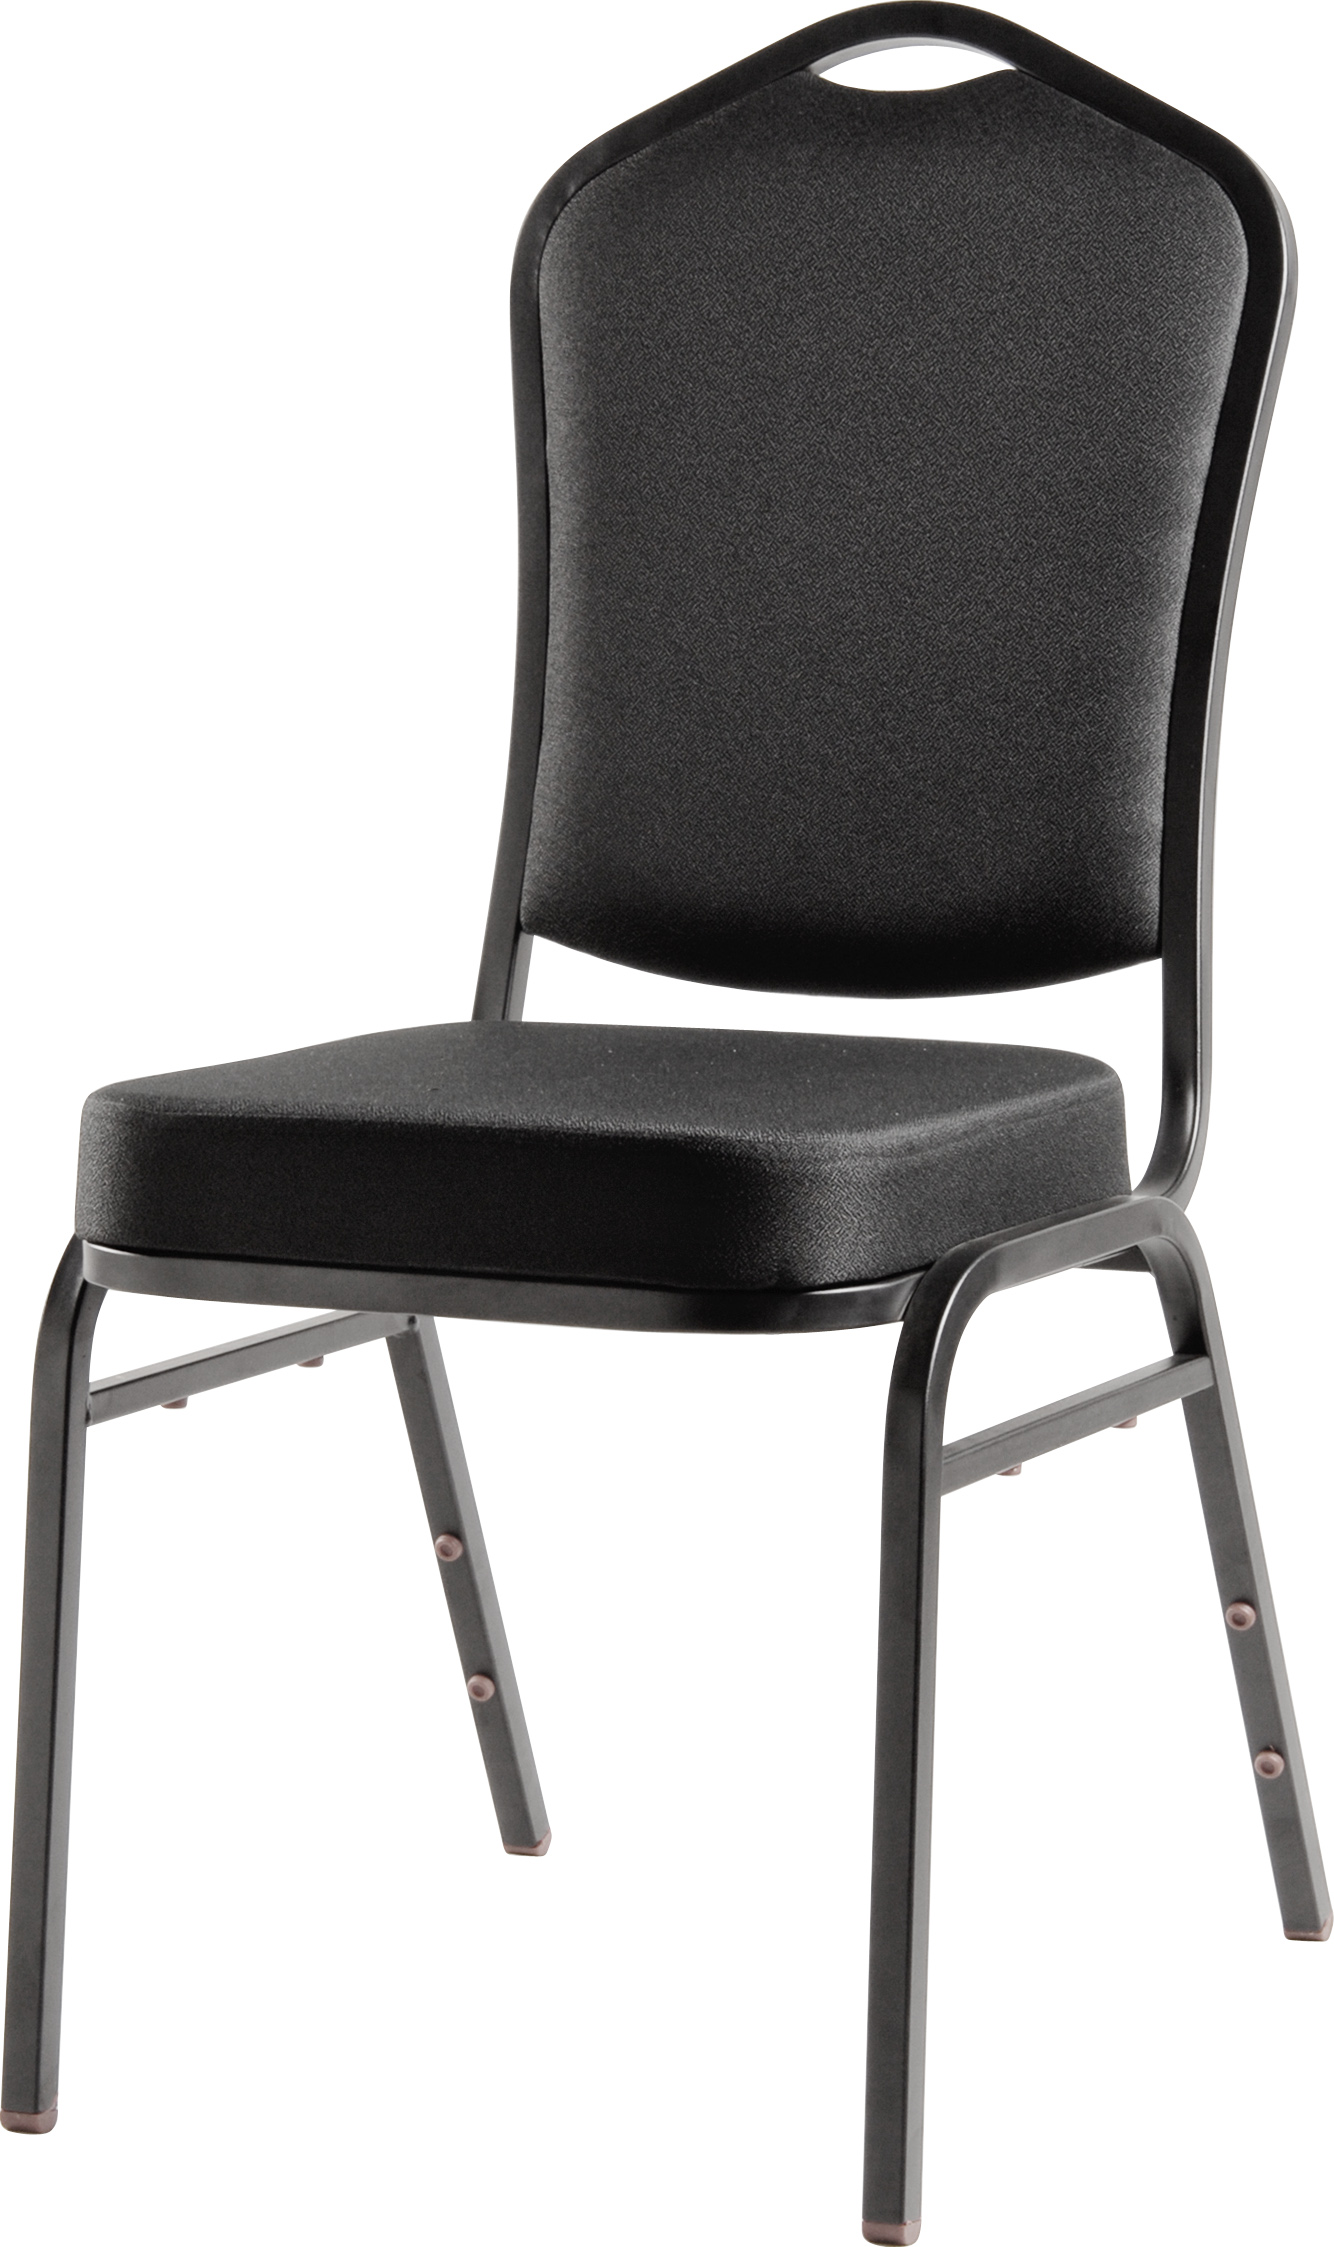 BC-2010钢椅.jpg